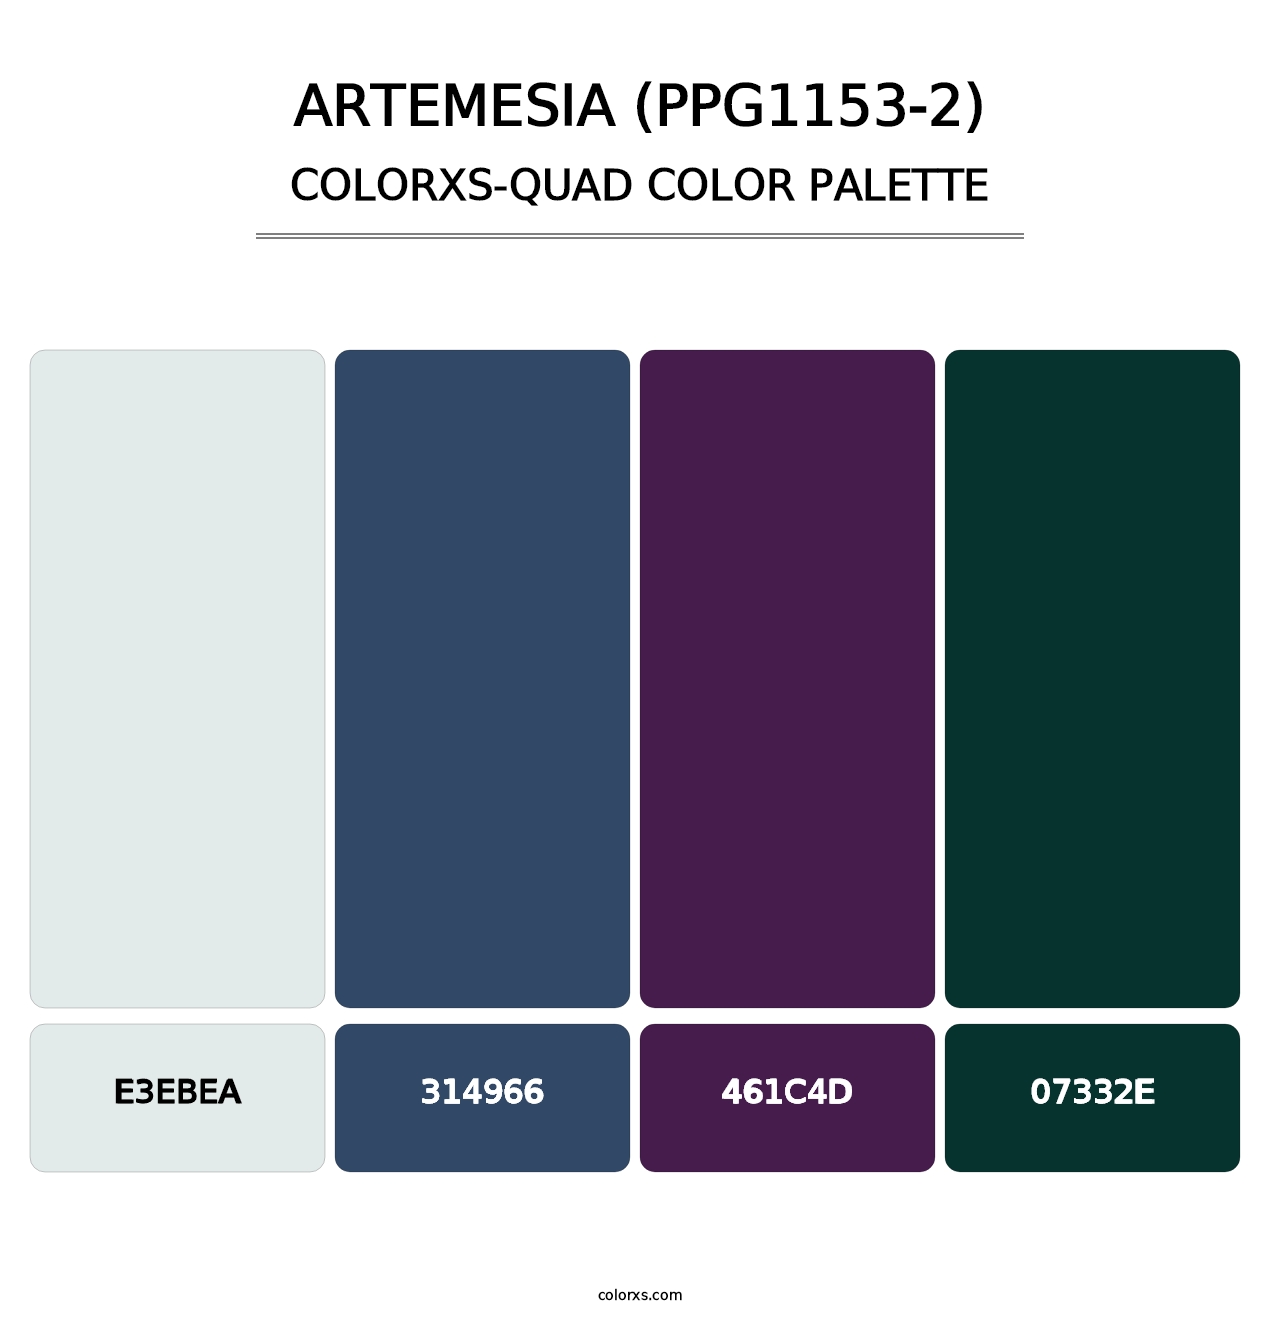 Artemesia (PPG1153-2) - Colorxs Quad Palette